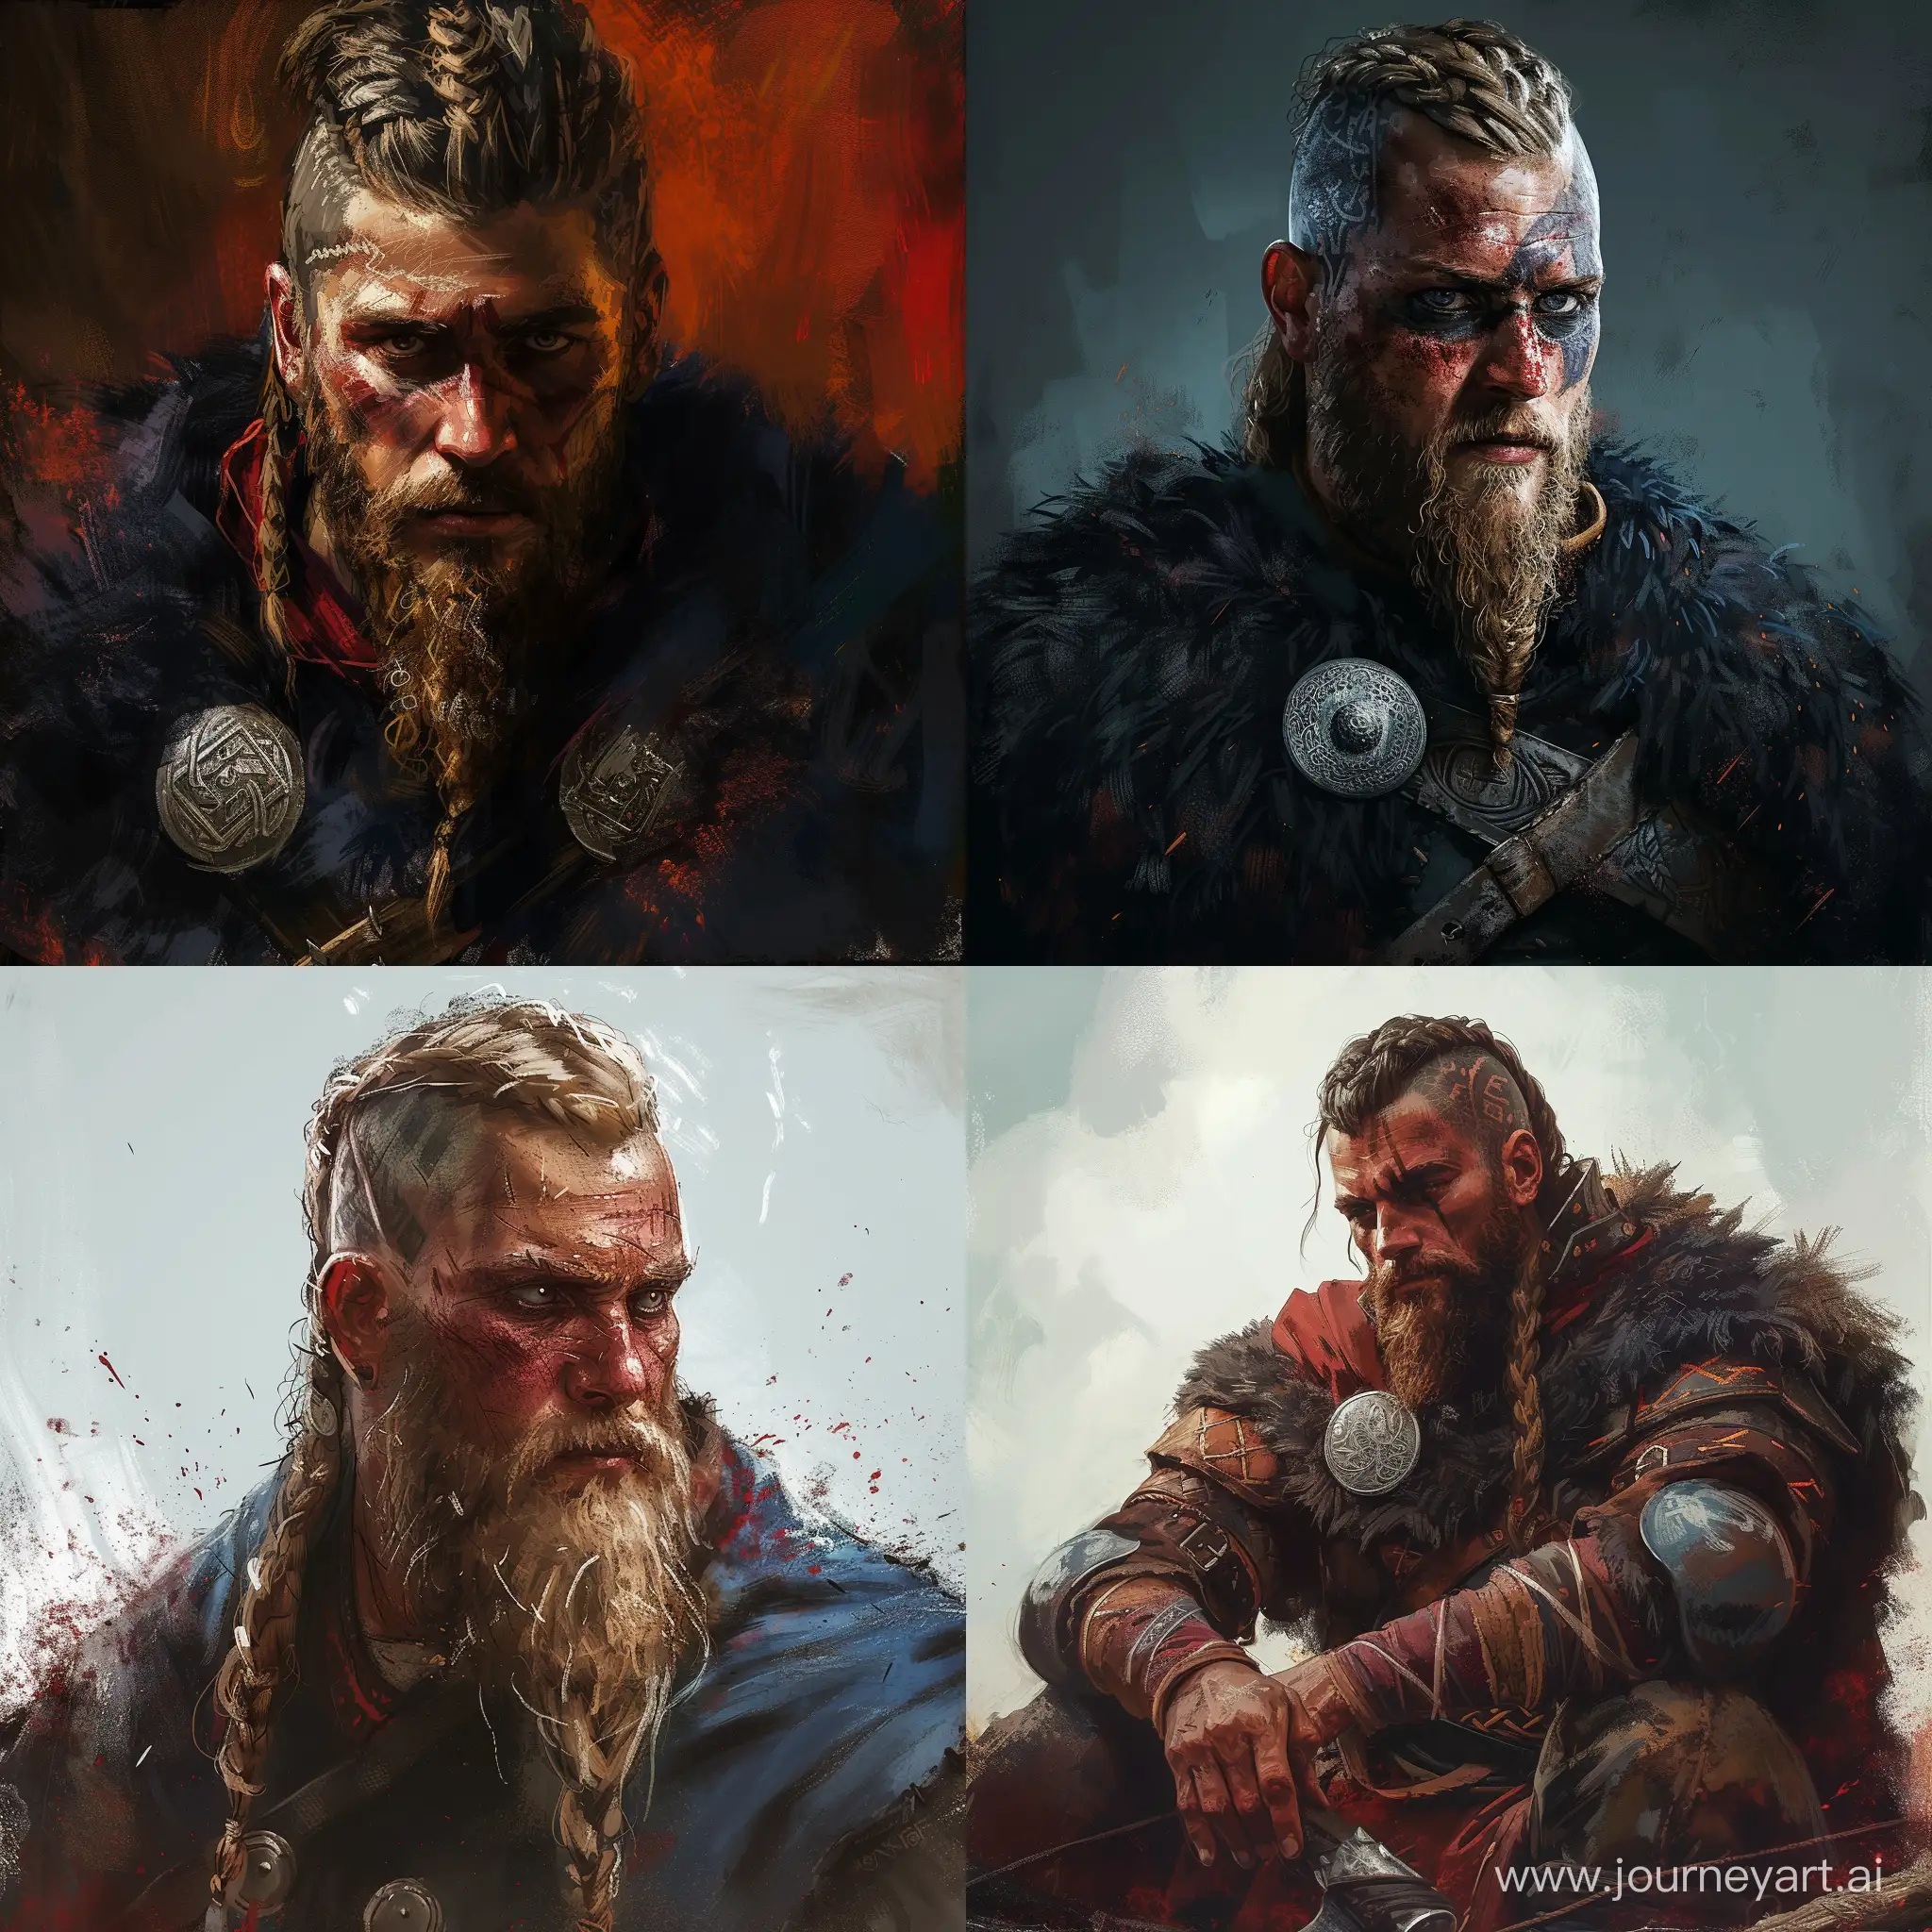 An digital art of a Viking man